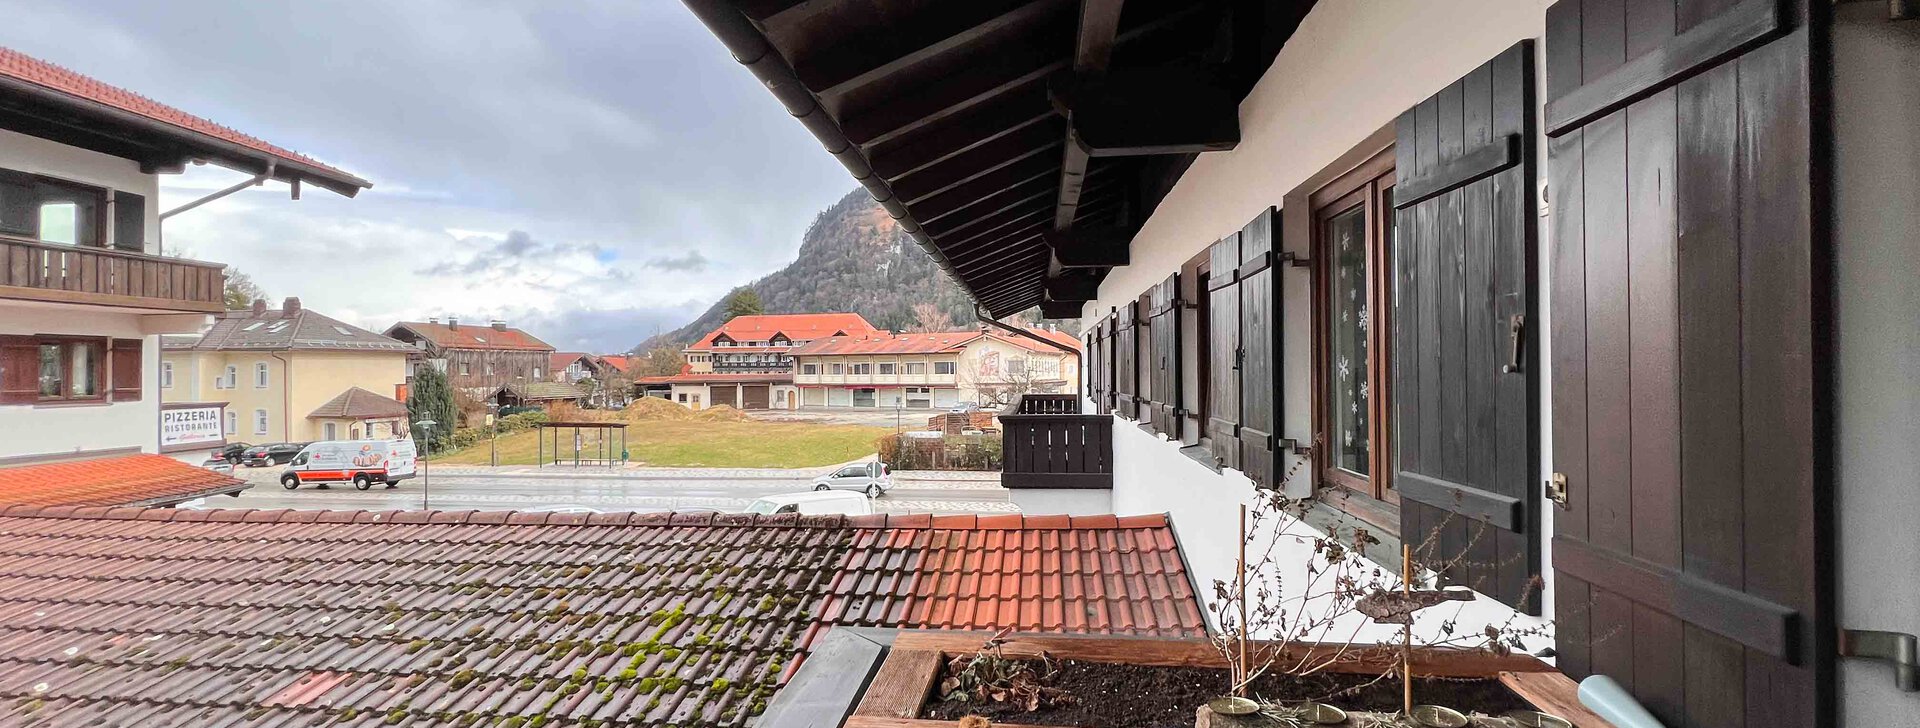 Ausblick Balkon, Immobilie kaufen, 2-Zimmer Wohnung in Marquartstein  | © HausBauHaus GmbH